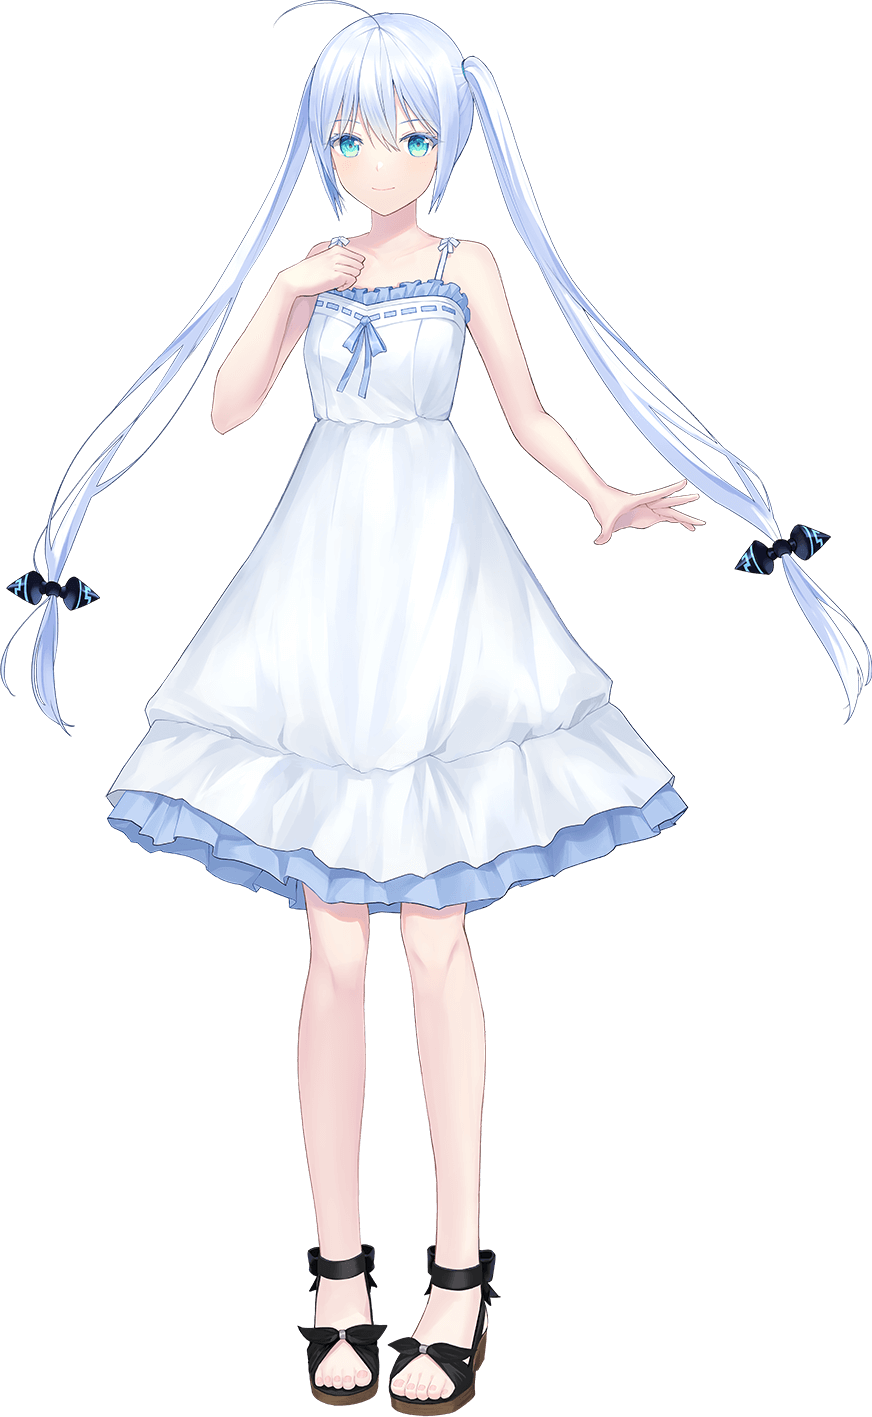 「霧島レイ」はレーダー探知機やポータブルナビなどで安全運転をサポートするサイバネティック少女であり、ユピテルオリジナルアニメキャラクター。